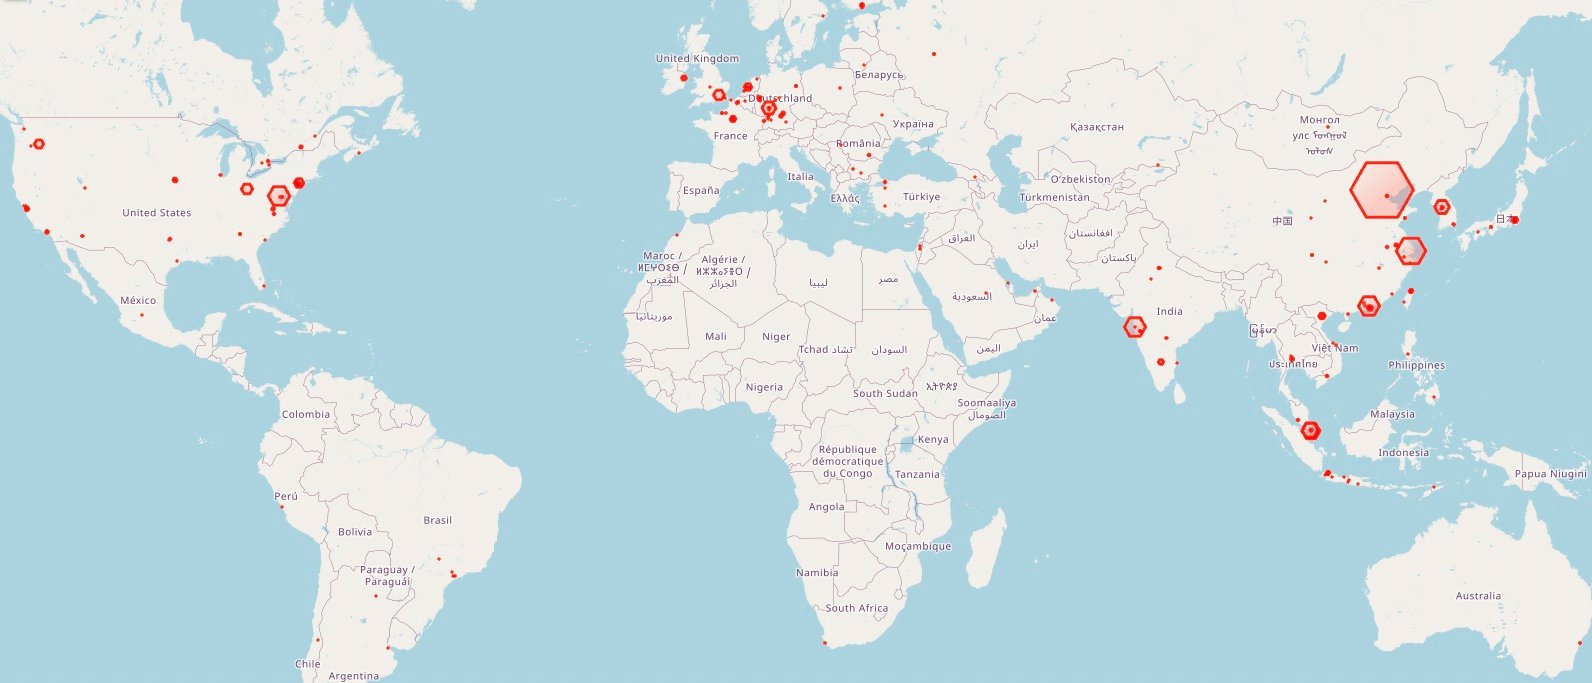 Güvenliği ihlal edilen Redis sunucularının miktarını ve konumlarını gösteren bir harita